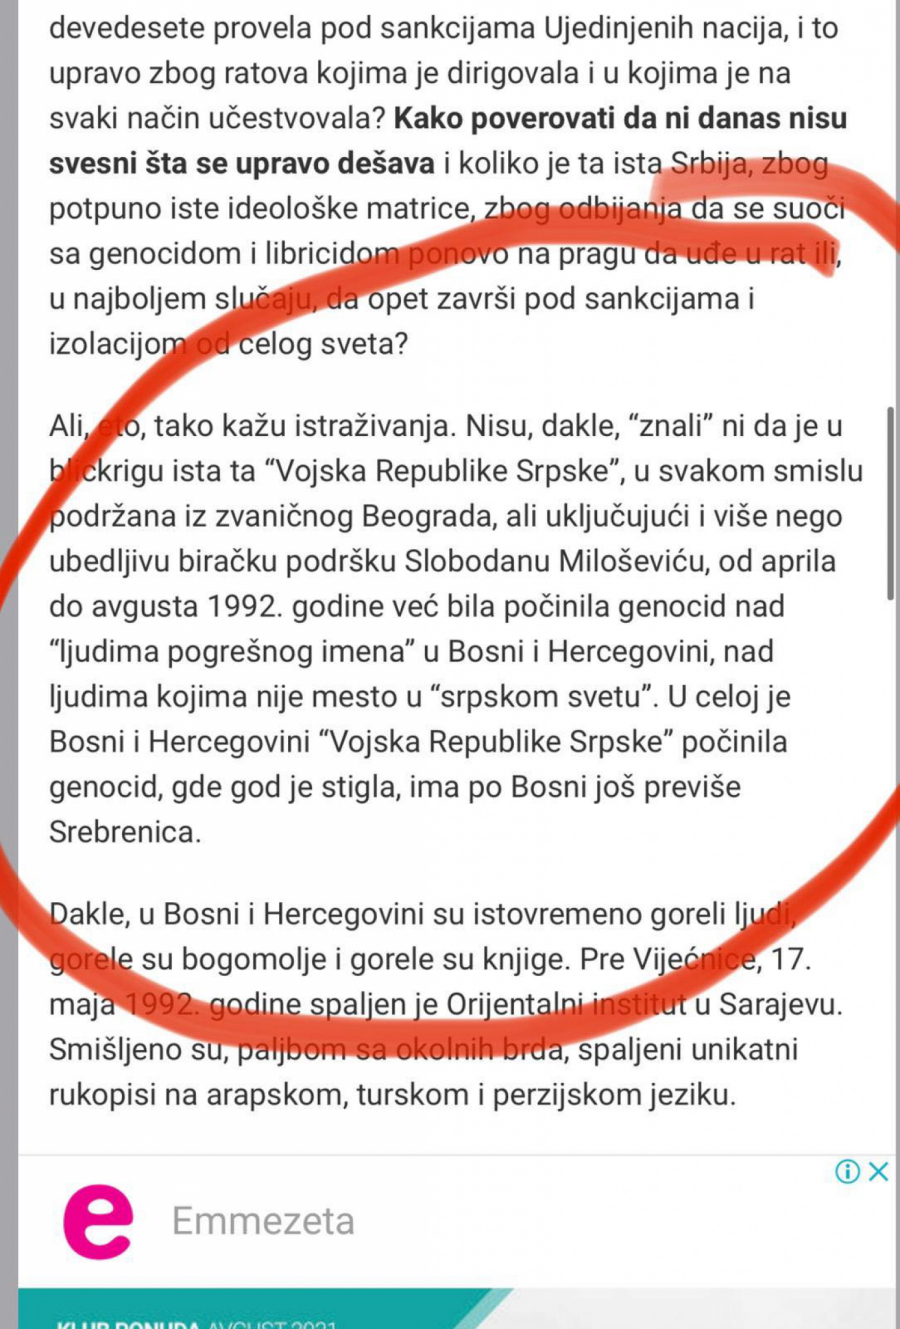 Marinikin Dinko Gluhonjić vređa srpski narod: Počinili su genocid u Bosni i Hercegovini, gde god su Srbi kročili bio je genocid!